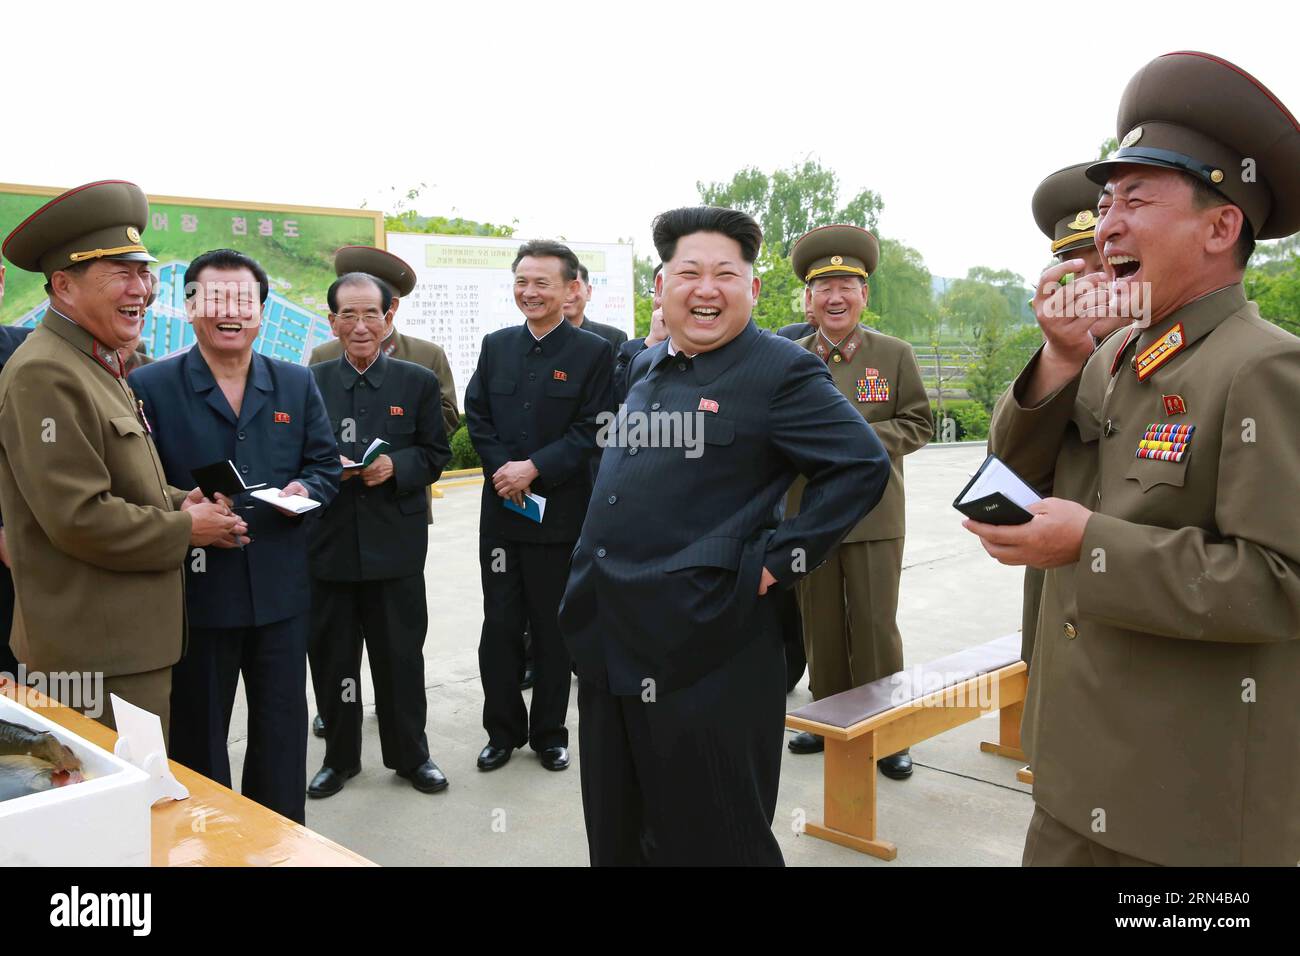 (150515) -- PJÖNGJANG, 15. Mai 2015 -- das Foto der Korean Central News Agency () vom 15. Mai 2015 zeigt den Spitzenführer der Demokratischen Volksrepublik Korea (DVRK) Kim Jong UN (C), der kürzlich die Fischfarm Sinchang unter der Einheit 810 der koreanischen Volksarmee (KPA) inspiziert hat. ) DPRK-KIM JONG UN-SINCHANG FISCHZUCHTINSPEKTION KCNA PUBLICATIONxNOTxINxCHN Pyongyang 15. Mai 2015 Foto der Koreanischen Zentralnachrichtenagentur AM 15. Mai 2015 zeigt den Spitzenführer der Demokratischen Prominenten der Republik Korea, DPRK Kim Jong UN C, der kürzlich die Fischfarm unter Einheit 810 der koreanischen Prominenten S inspiziert hat Ar Stockfoto